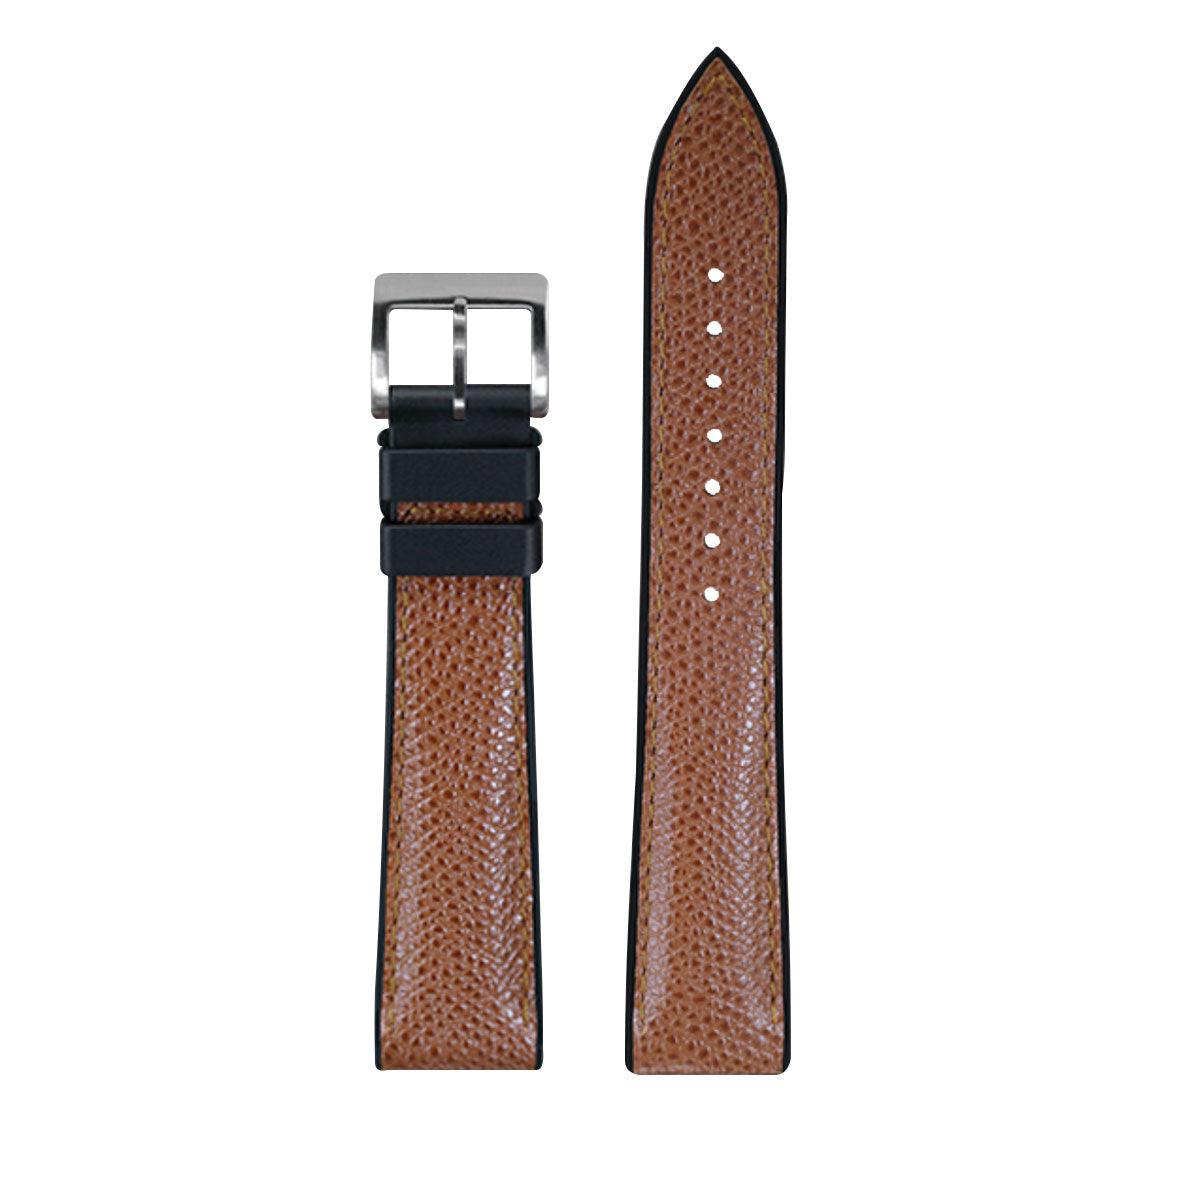 Rubber B - Bracelet caoutchouc en Veau - Série Structure base Noire - watch band leather strap - ABP Concept -